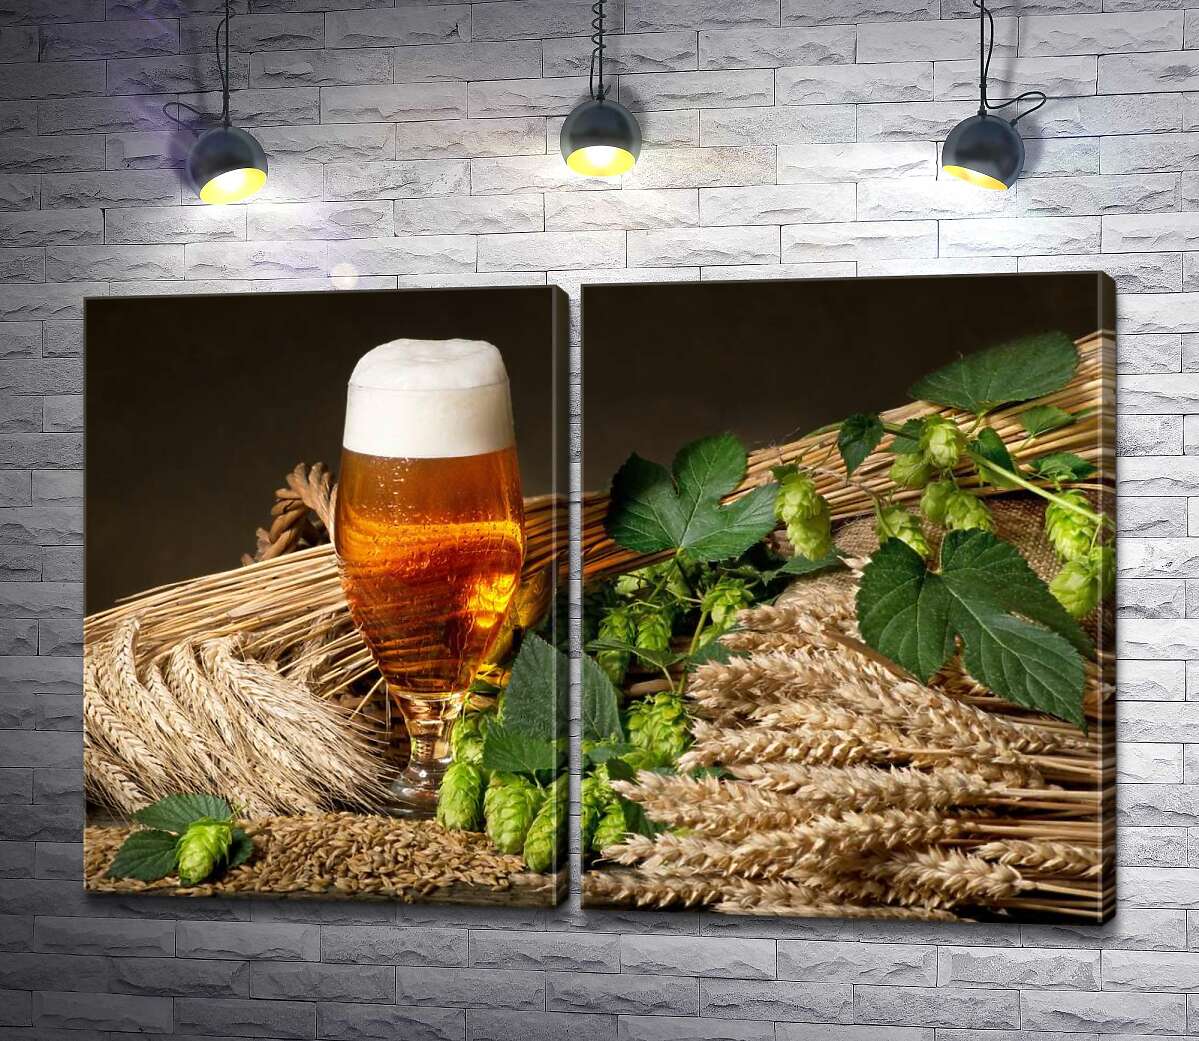 модульна картина Келих бурштинового пива серед снопів пшениці, ячменю та зелених голівок хмелю